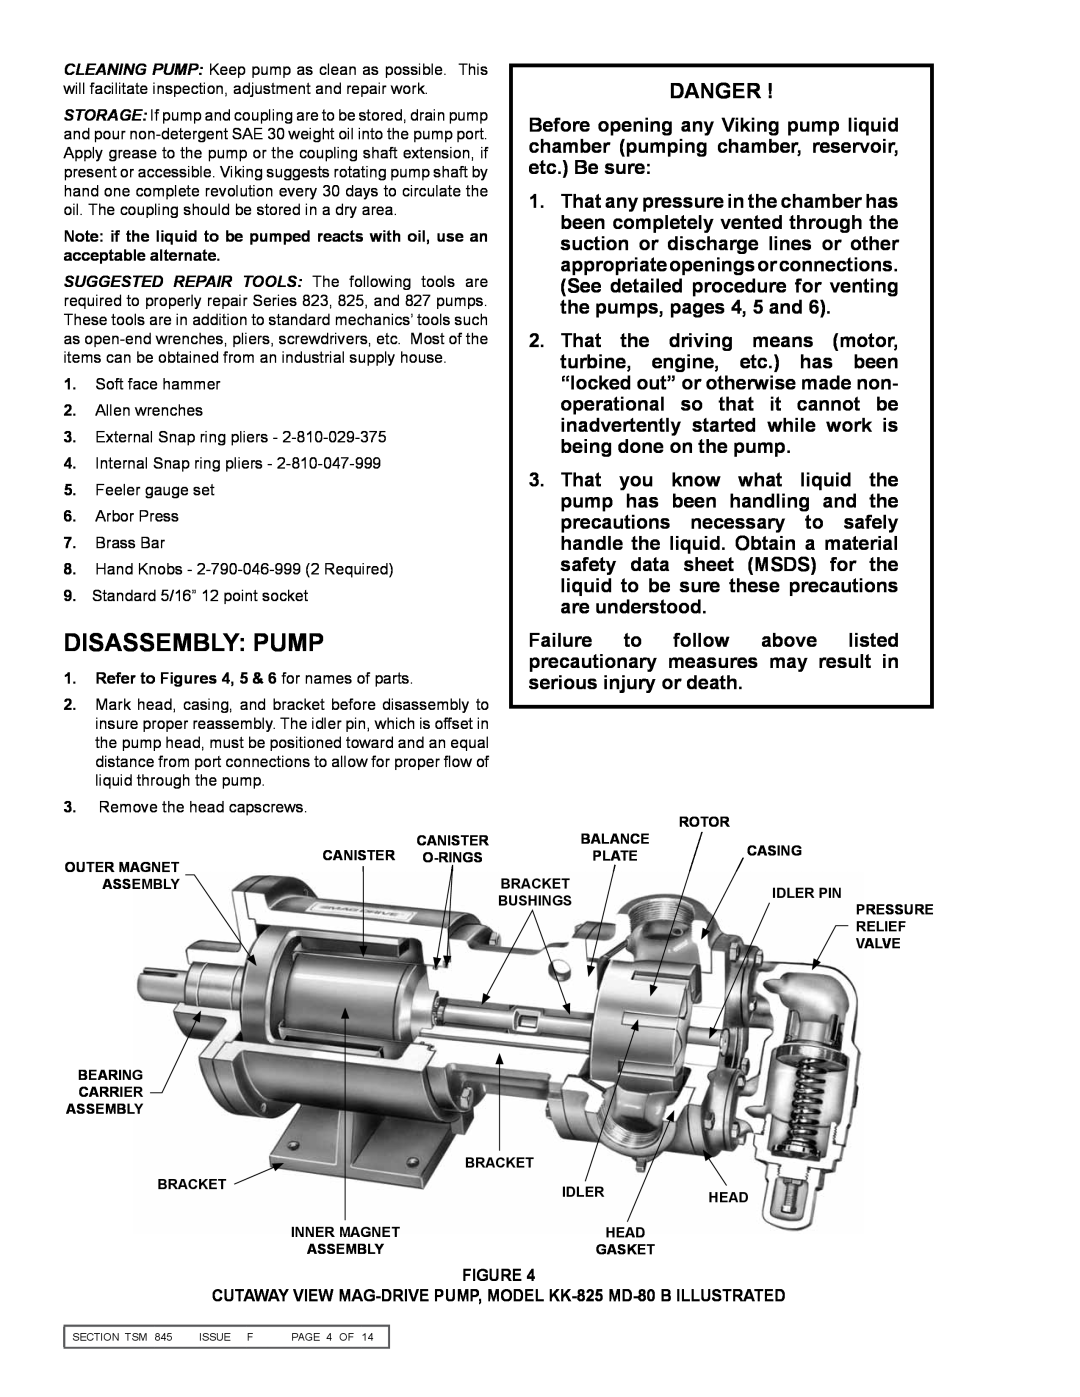 Viking KK823, KK825, KK827, K-825, K-823, K-827 service manual Disassembly Pump, Danger 